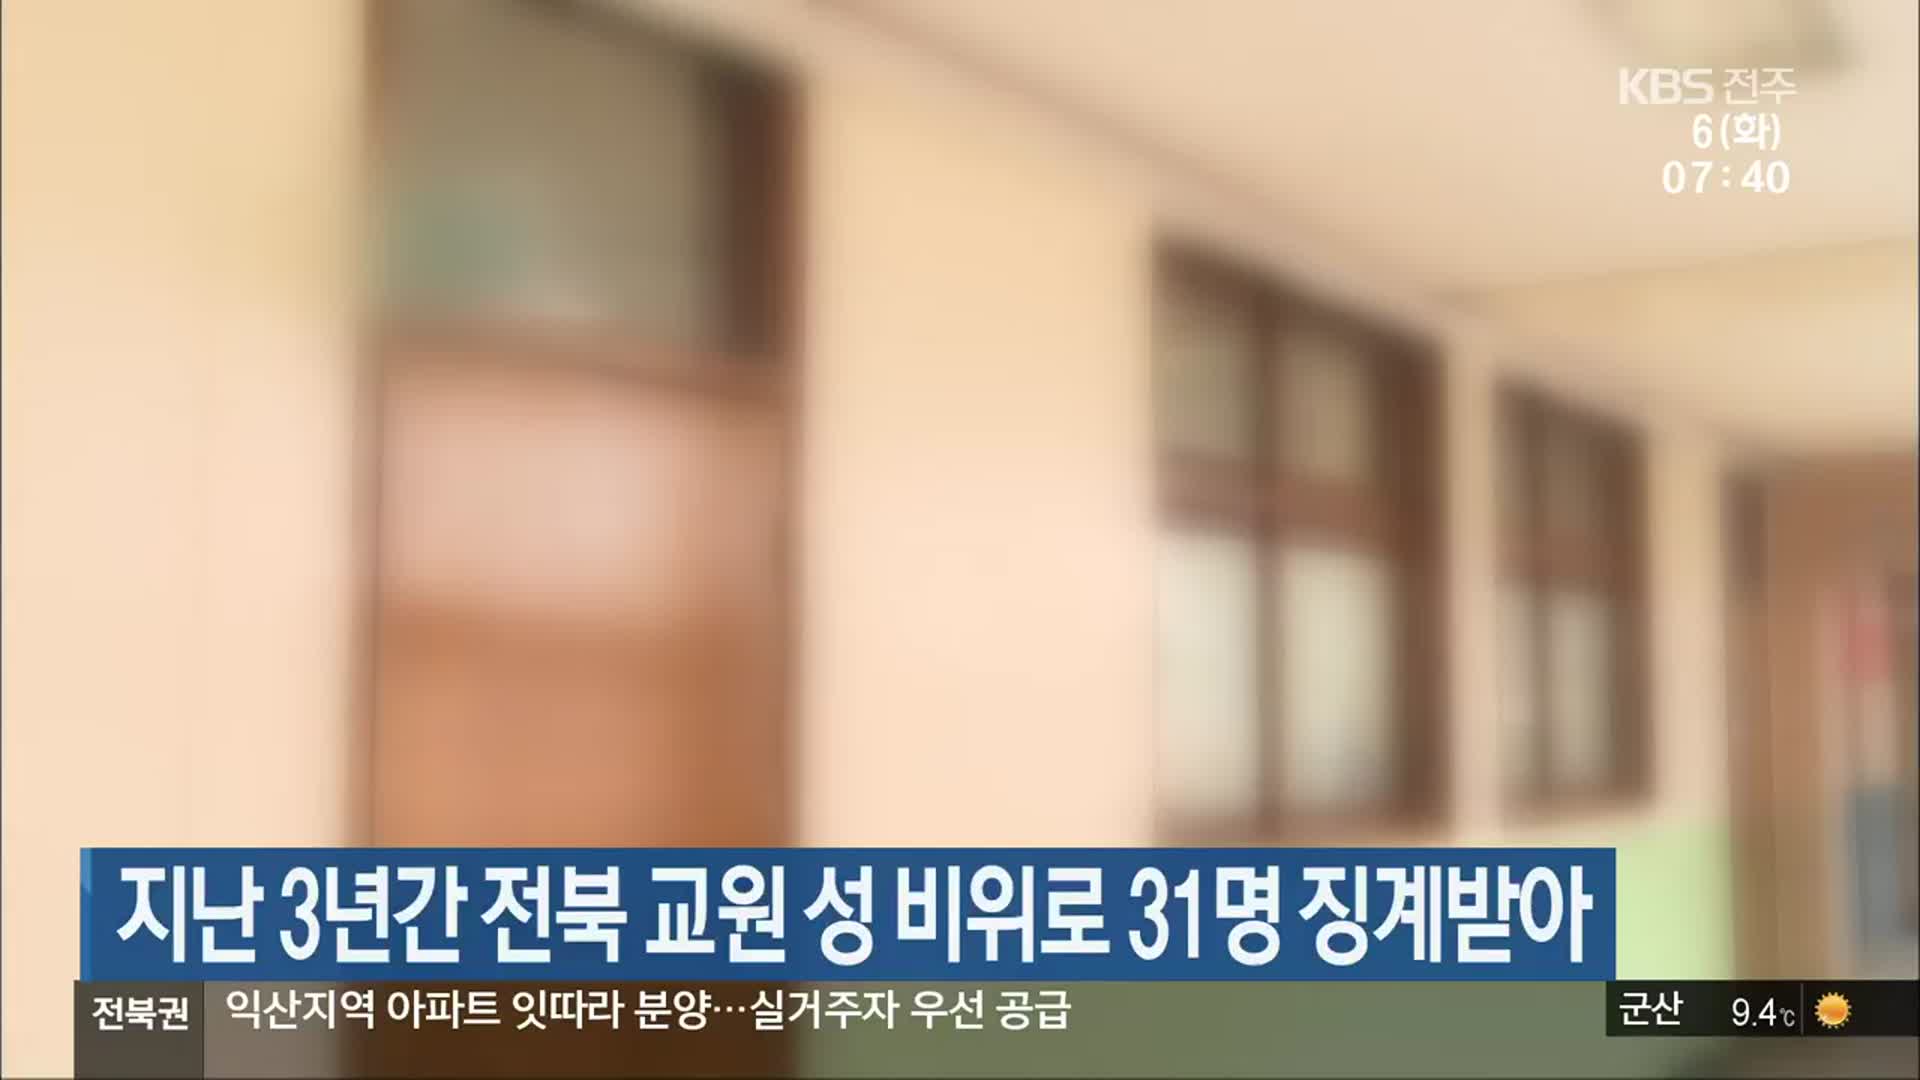 지난 3년간 전북 교원 성 비위로 31명 징계받아